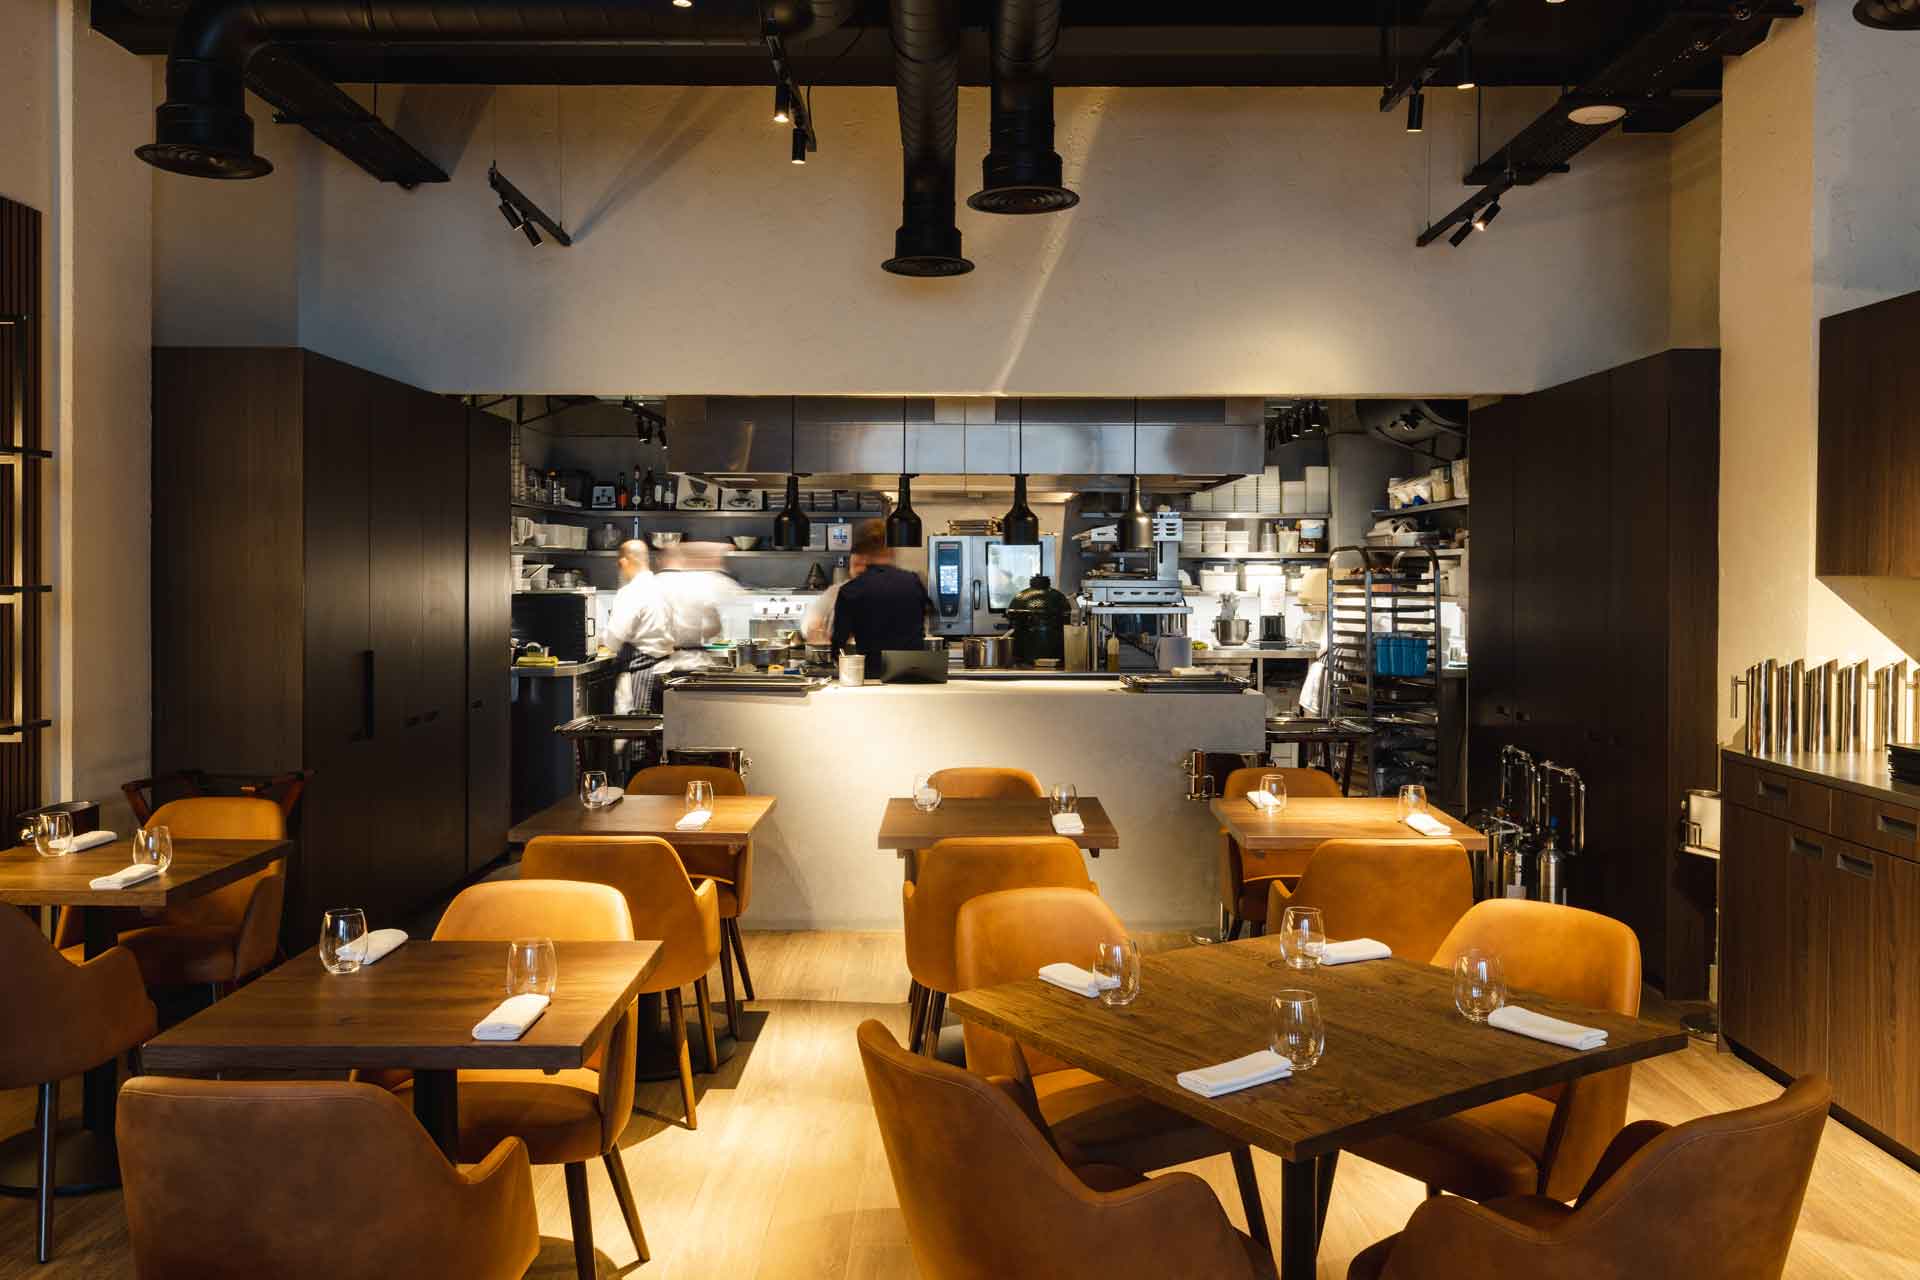 Restaurant Review: London Stock, Mayfair